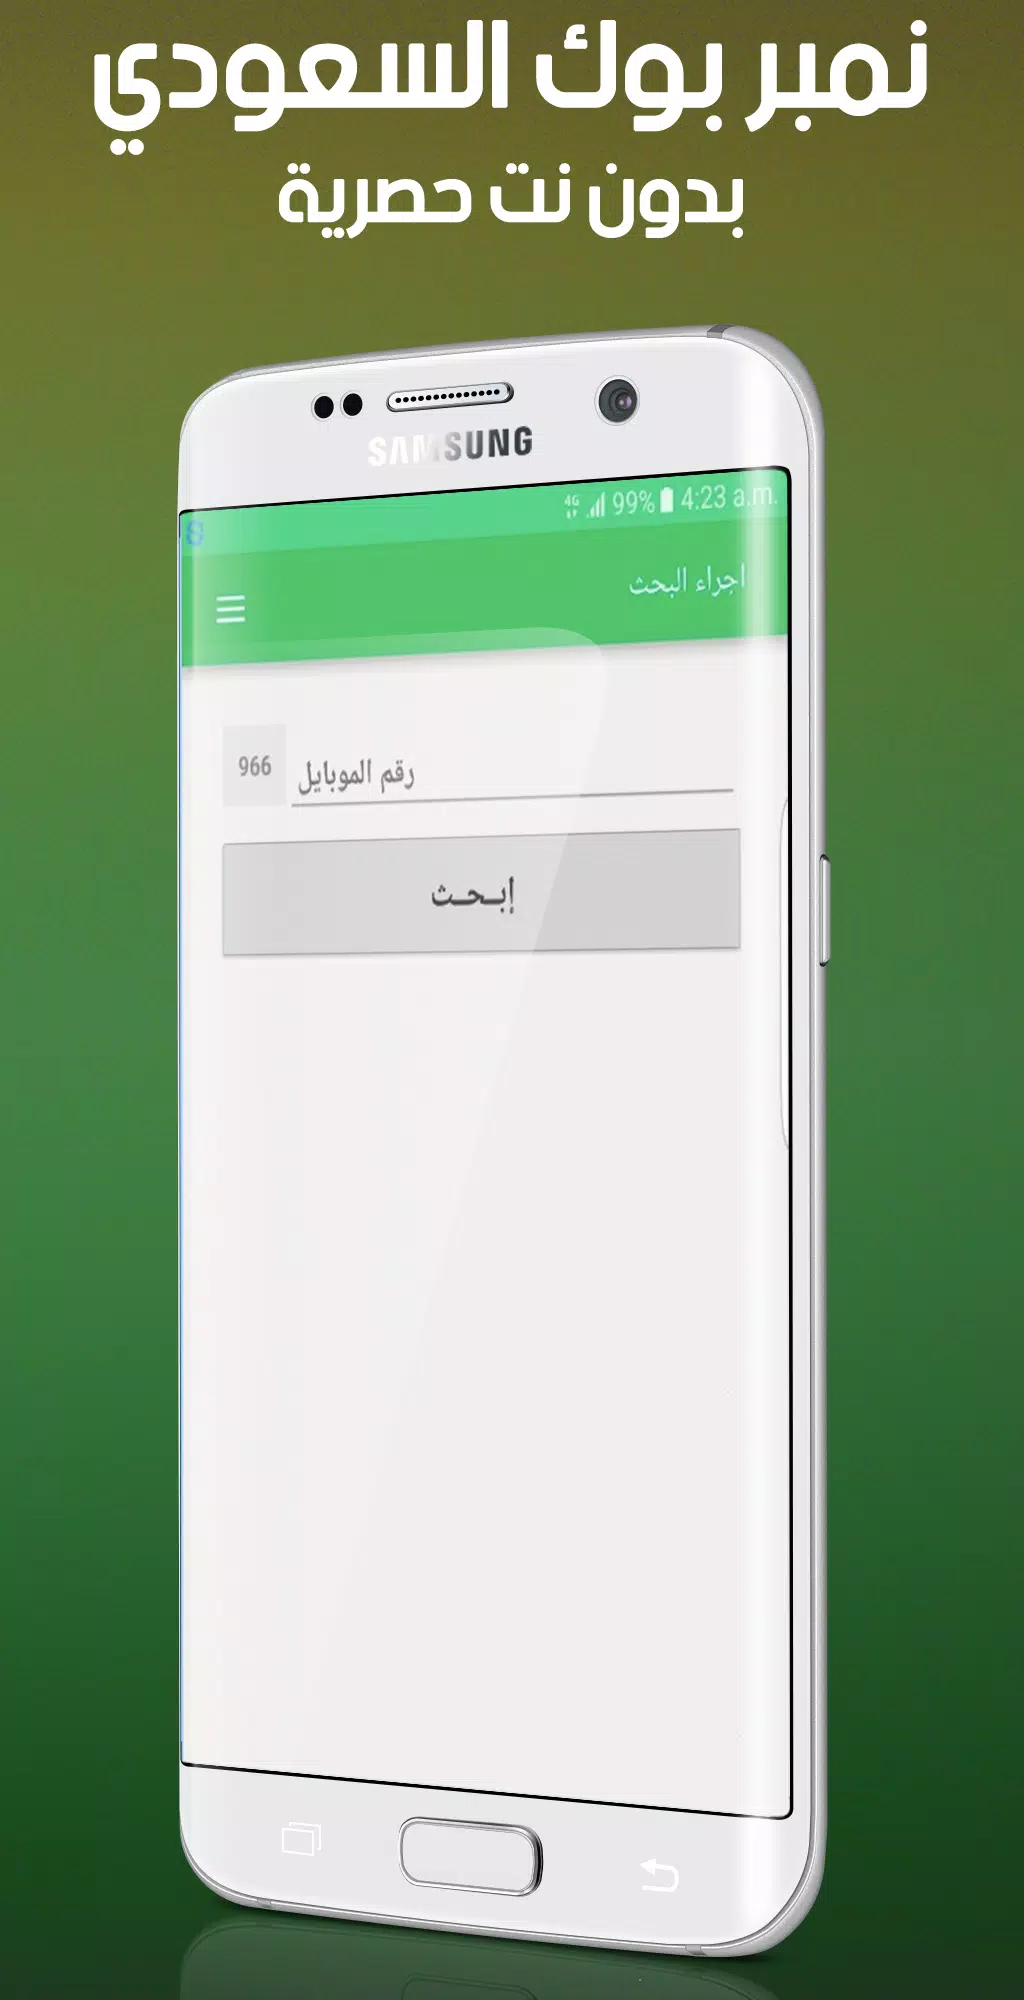 دليل الهاتف السعودي APK for Android Download